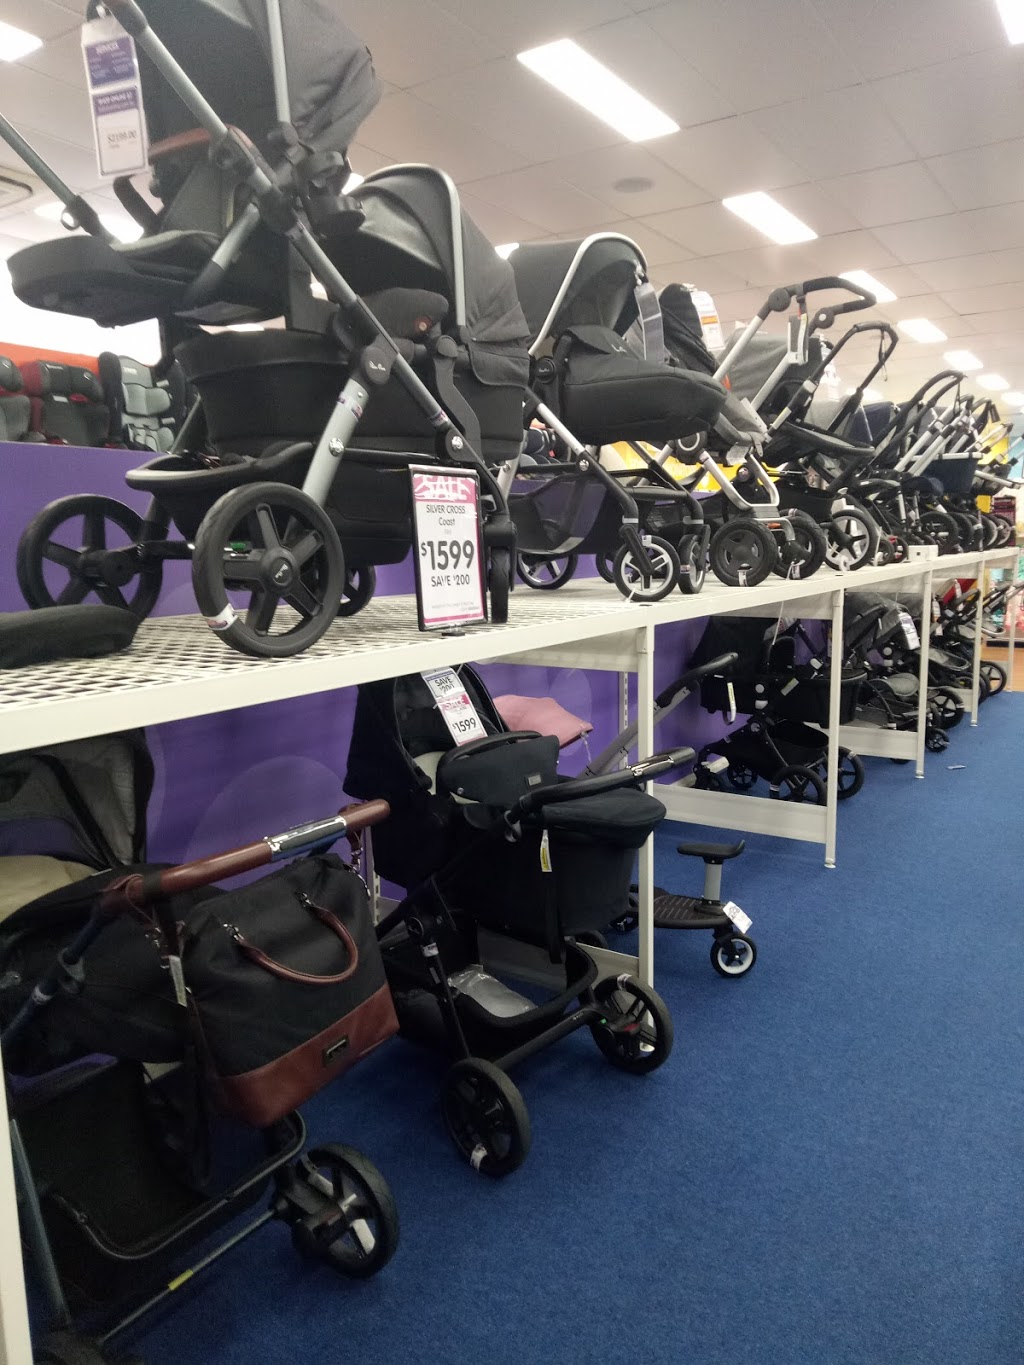 Baby Bunting - Aspley | clothing store | shop 5/6, 825 Zillmere Rd, Aspley QLD 4034, Australia | 0732633200 OR +61 7 3263 3200